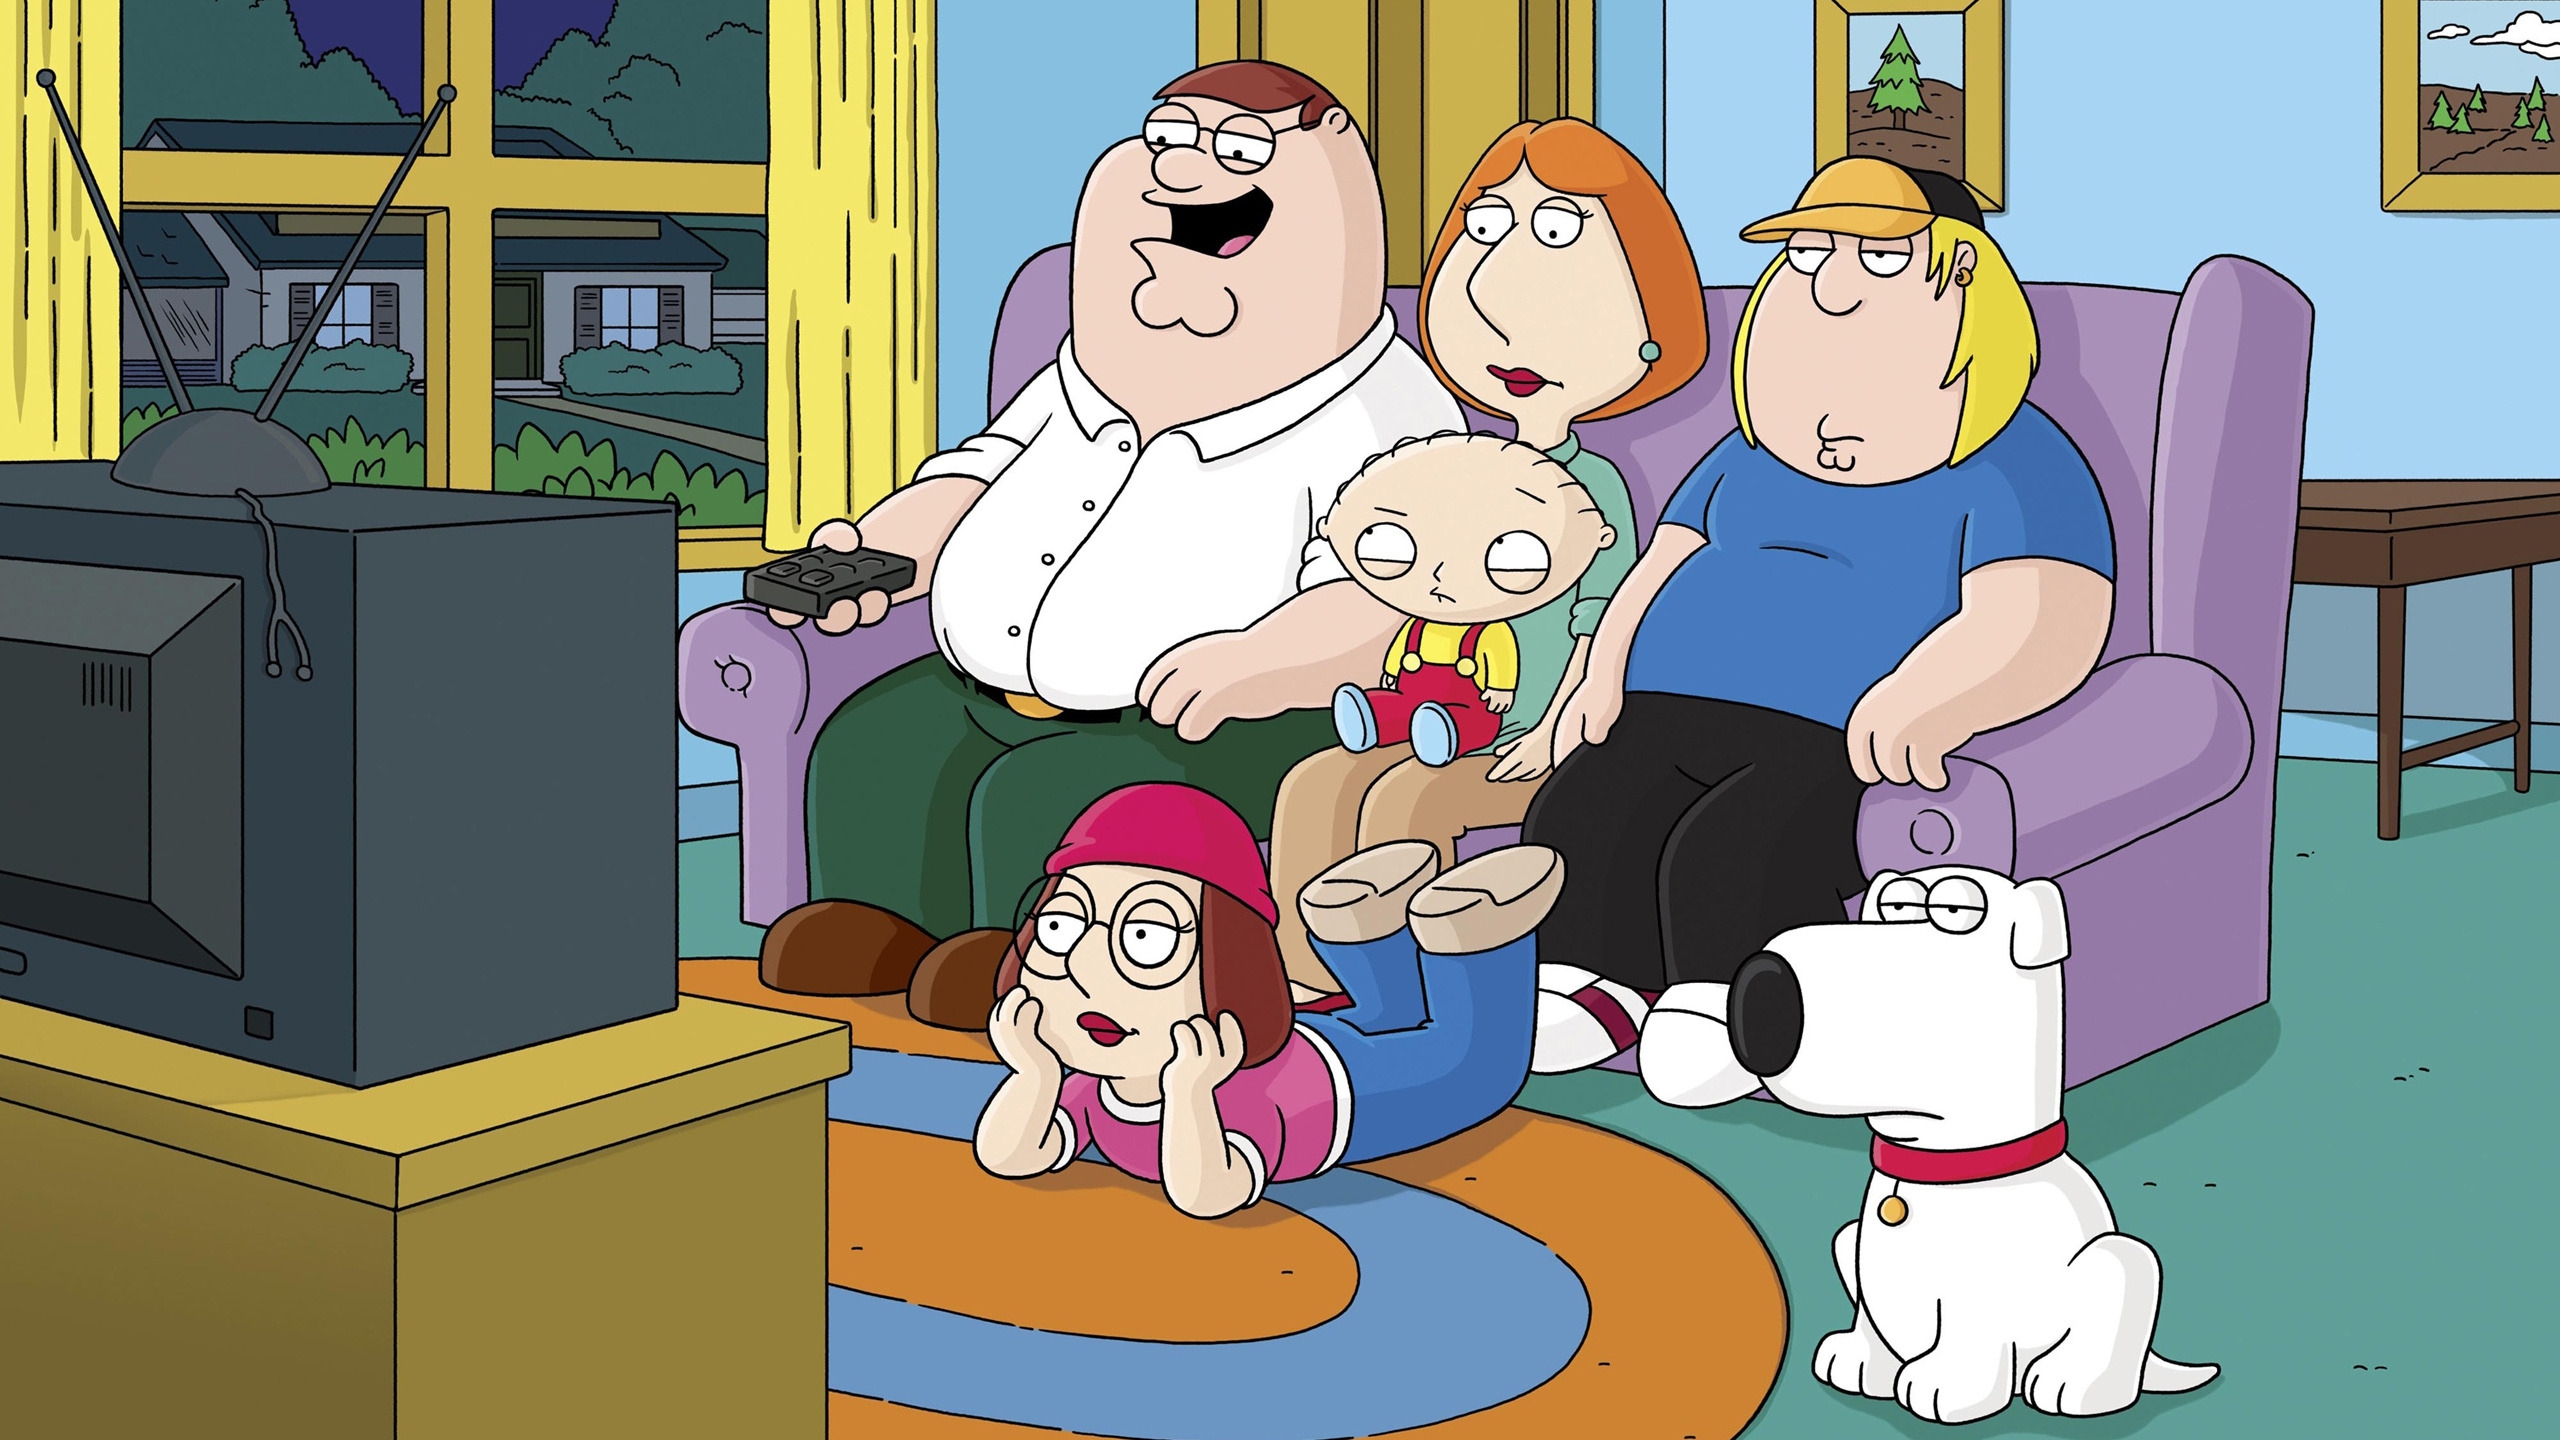 Family Guy for 2560x1440 HDTV resolution